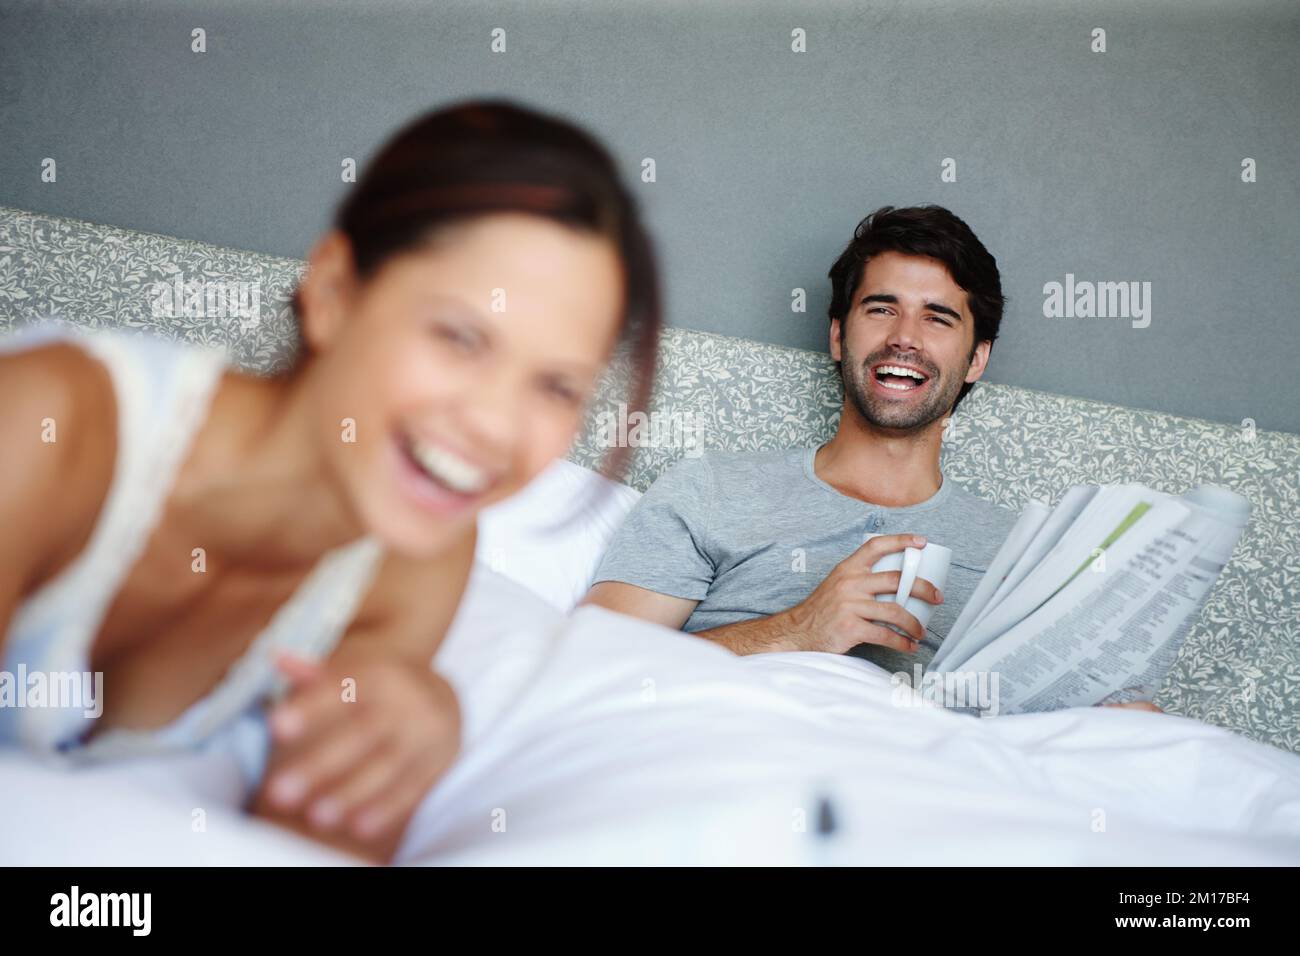 Détendu et heureux. Photo d'un homme au lit souriant à sa petite amie avec un journal et une tasse dans la main. Banque D'Images